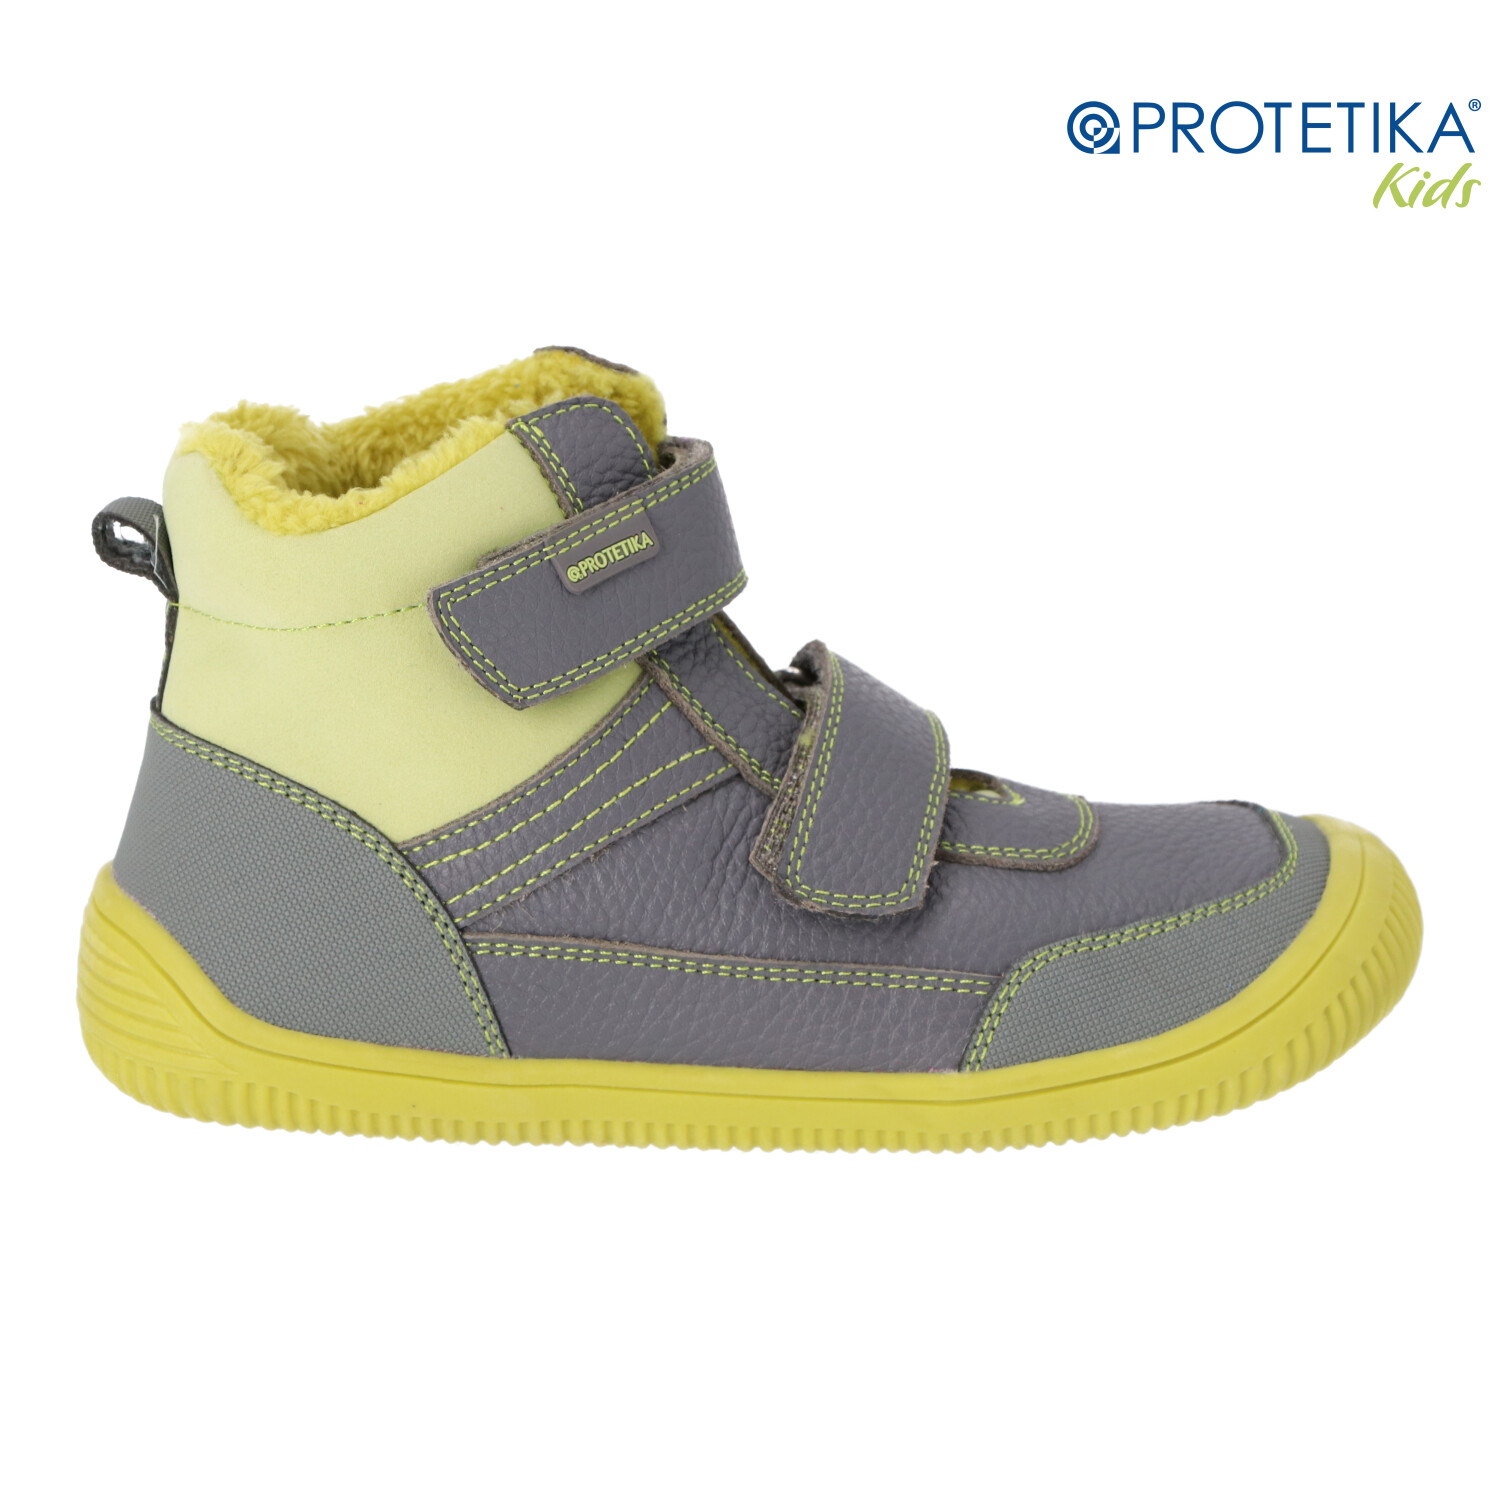 Protetika - zimné barefootové topánky TYREL green - zateplené kožušinkou